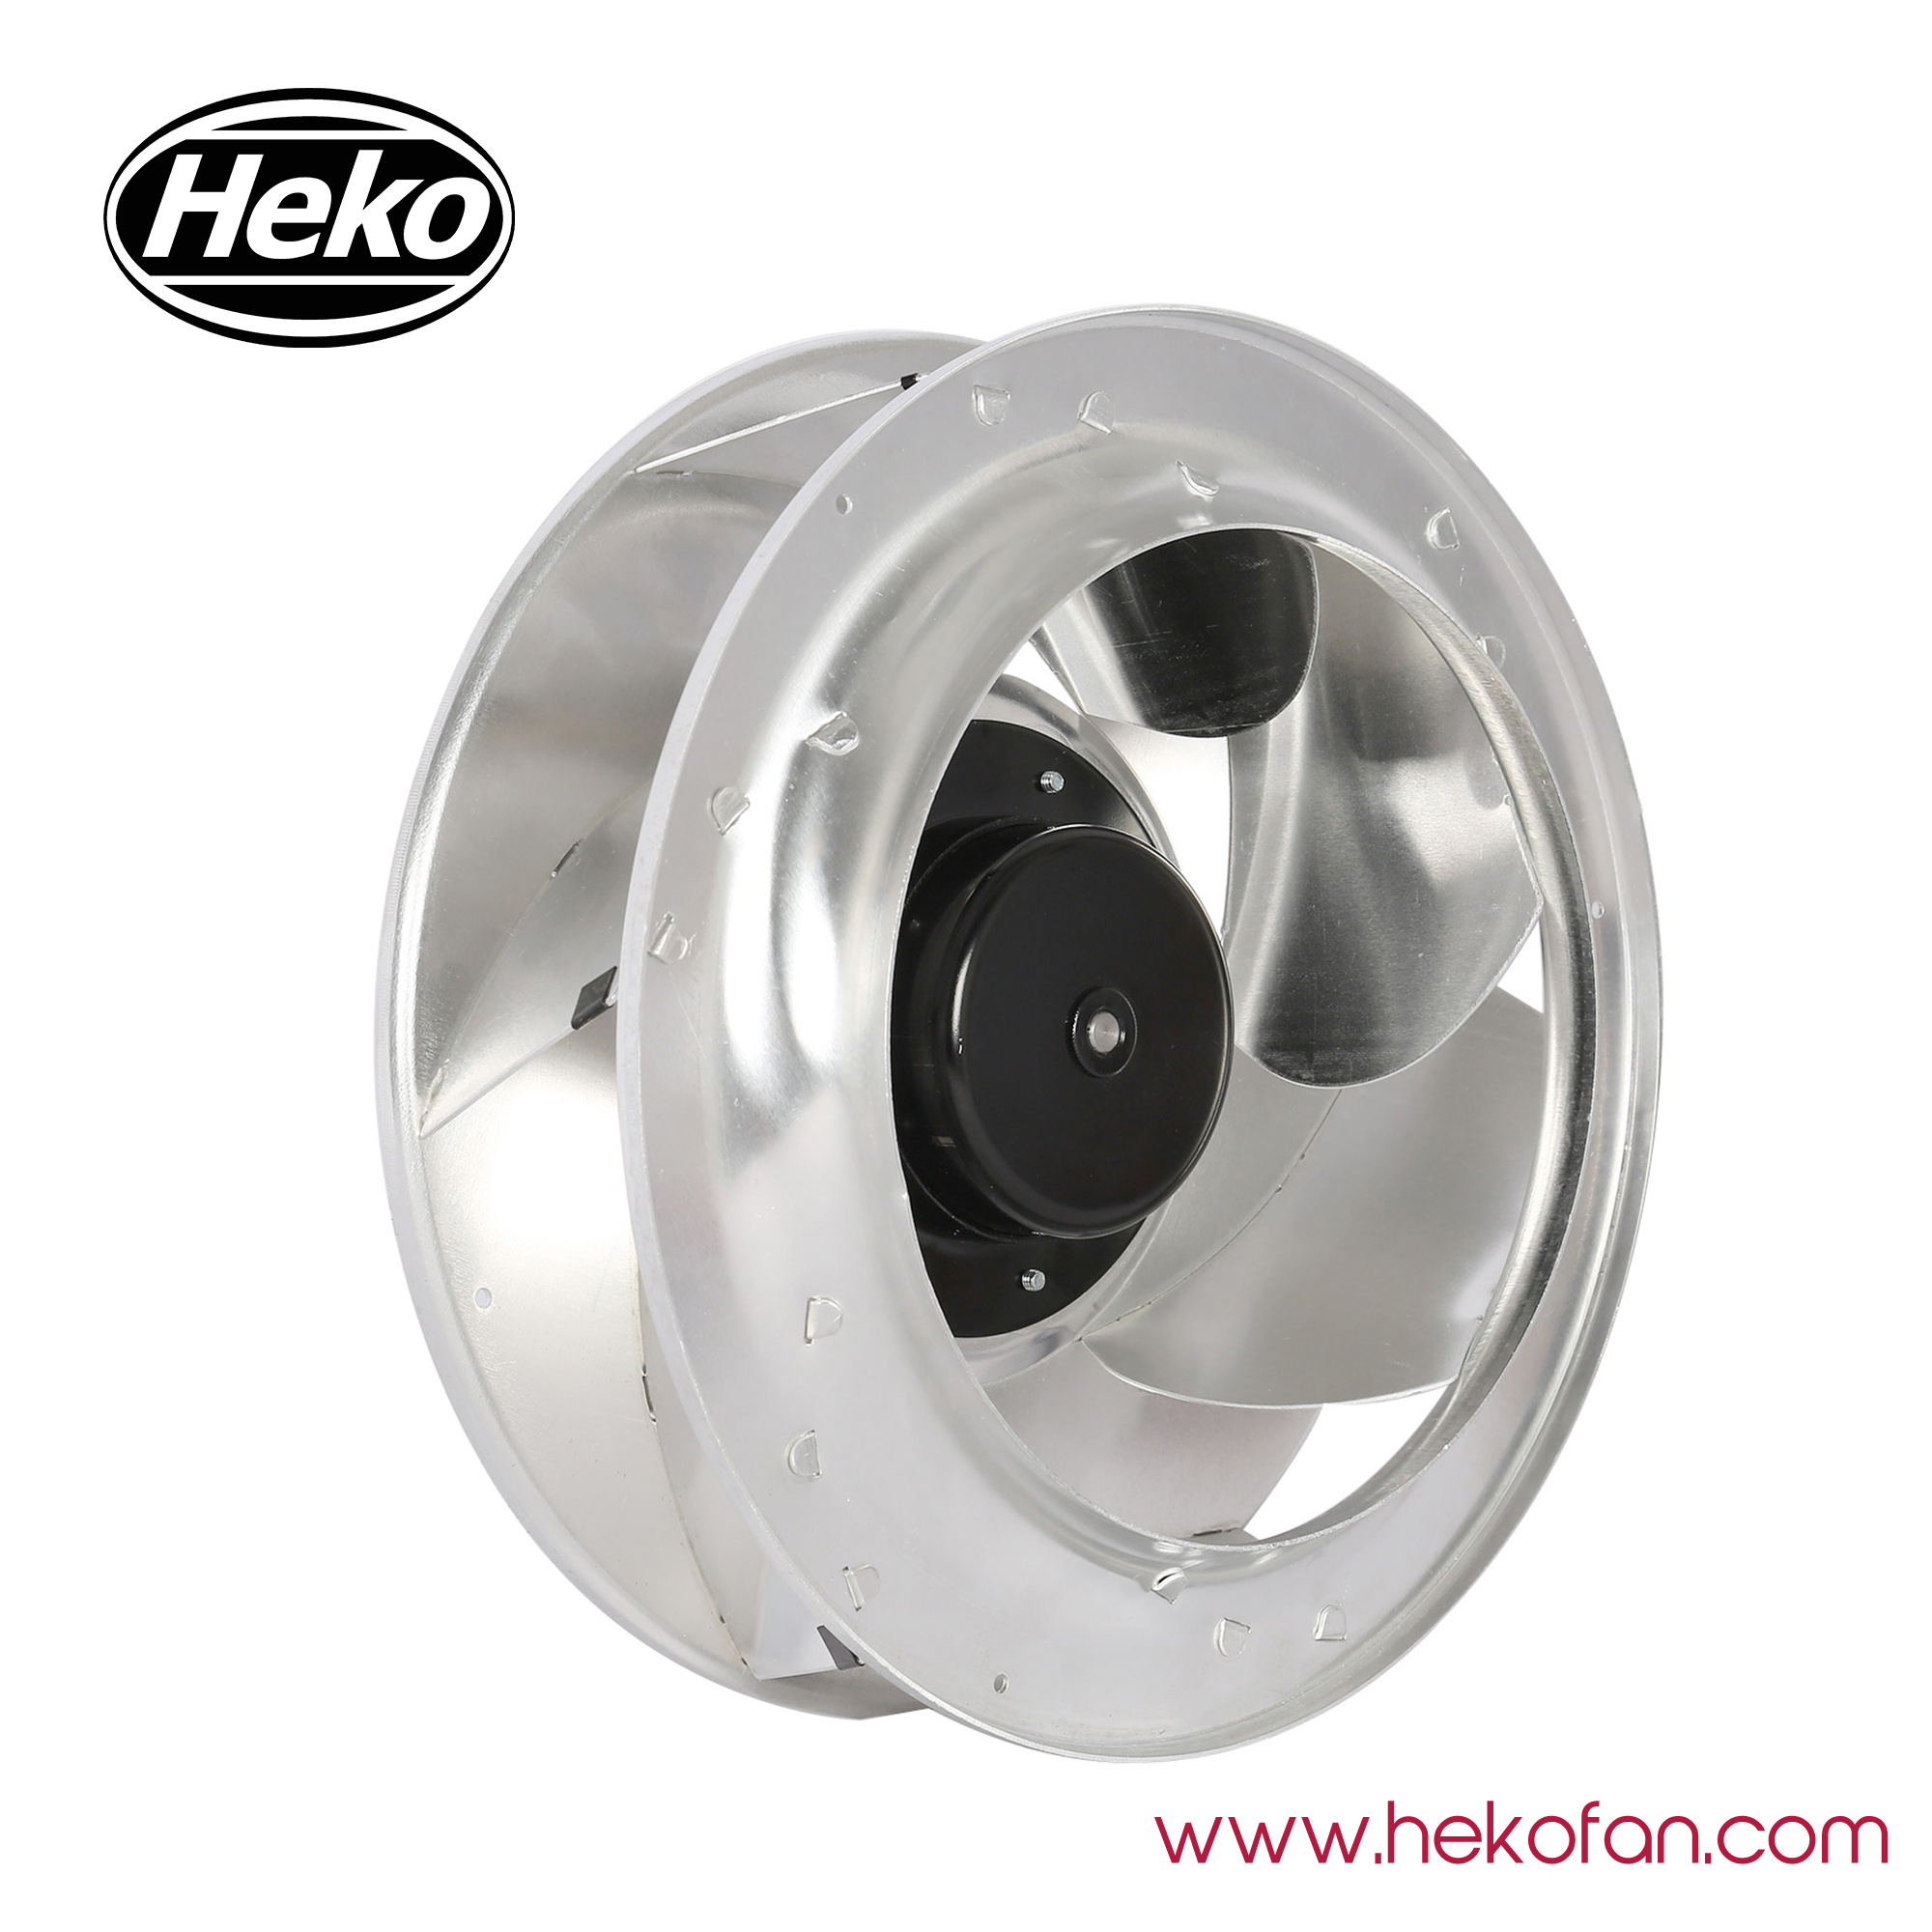 HEKO EC310mm Industry Low Noise Centrifugal Blower Fan 